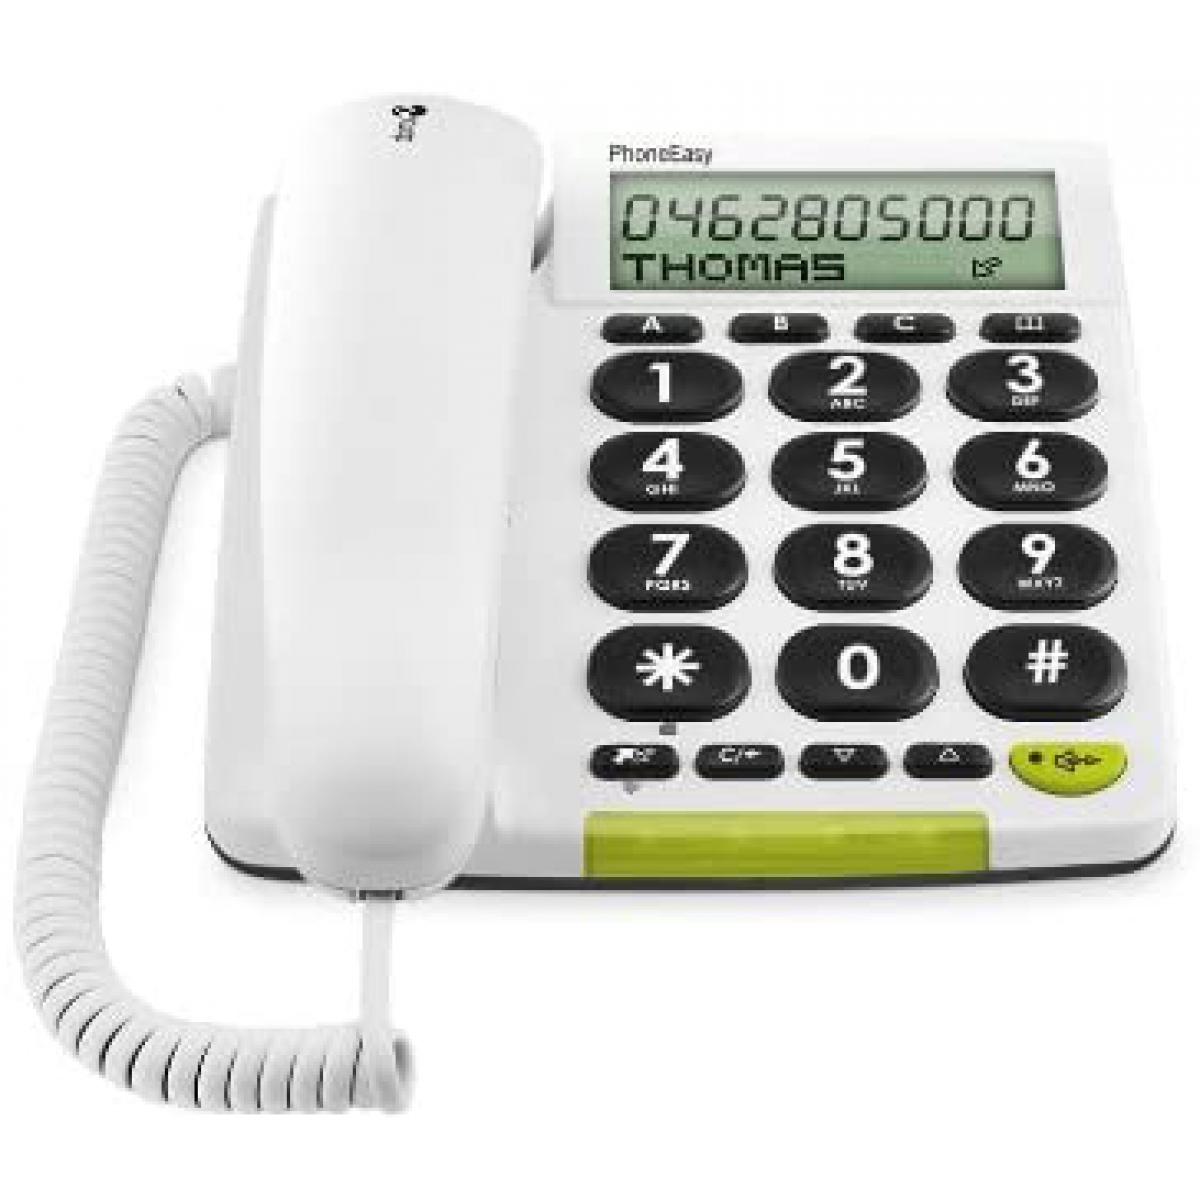 Doro - telephone filaire avec écran Blanc - Téléphone fixe filaire